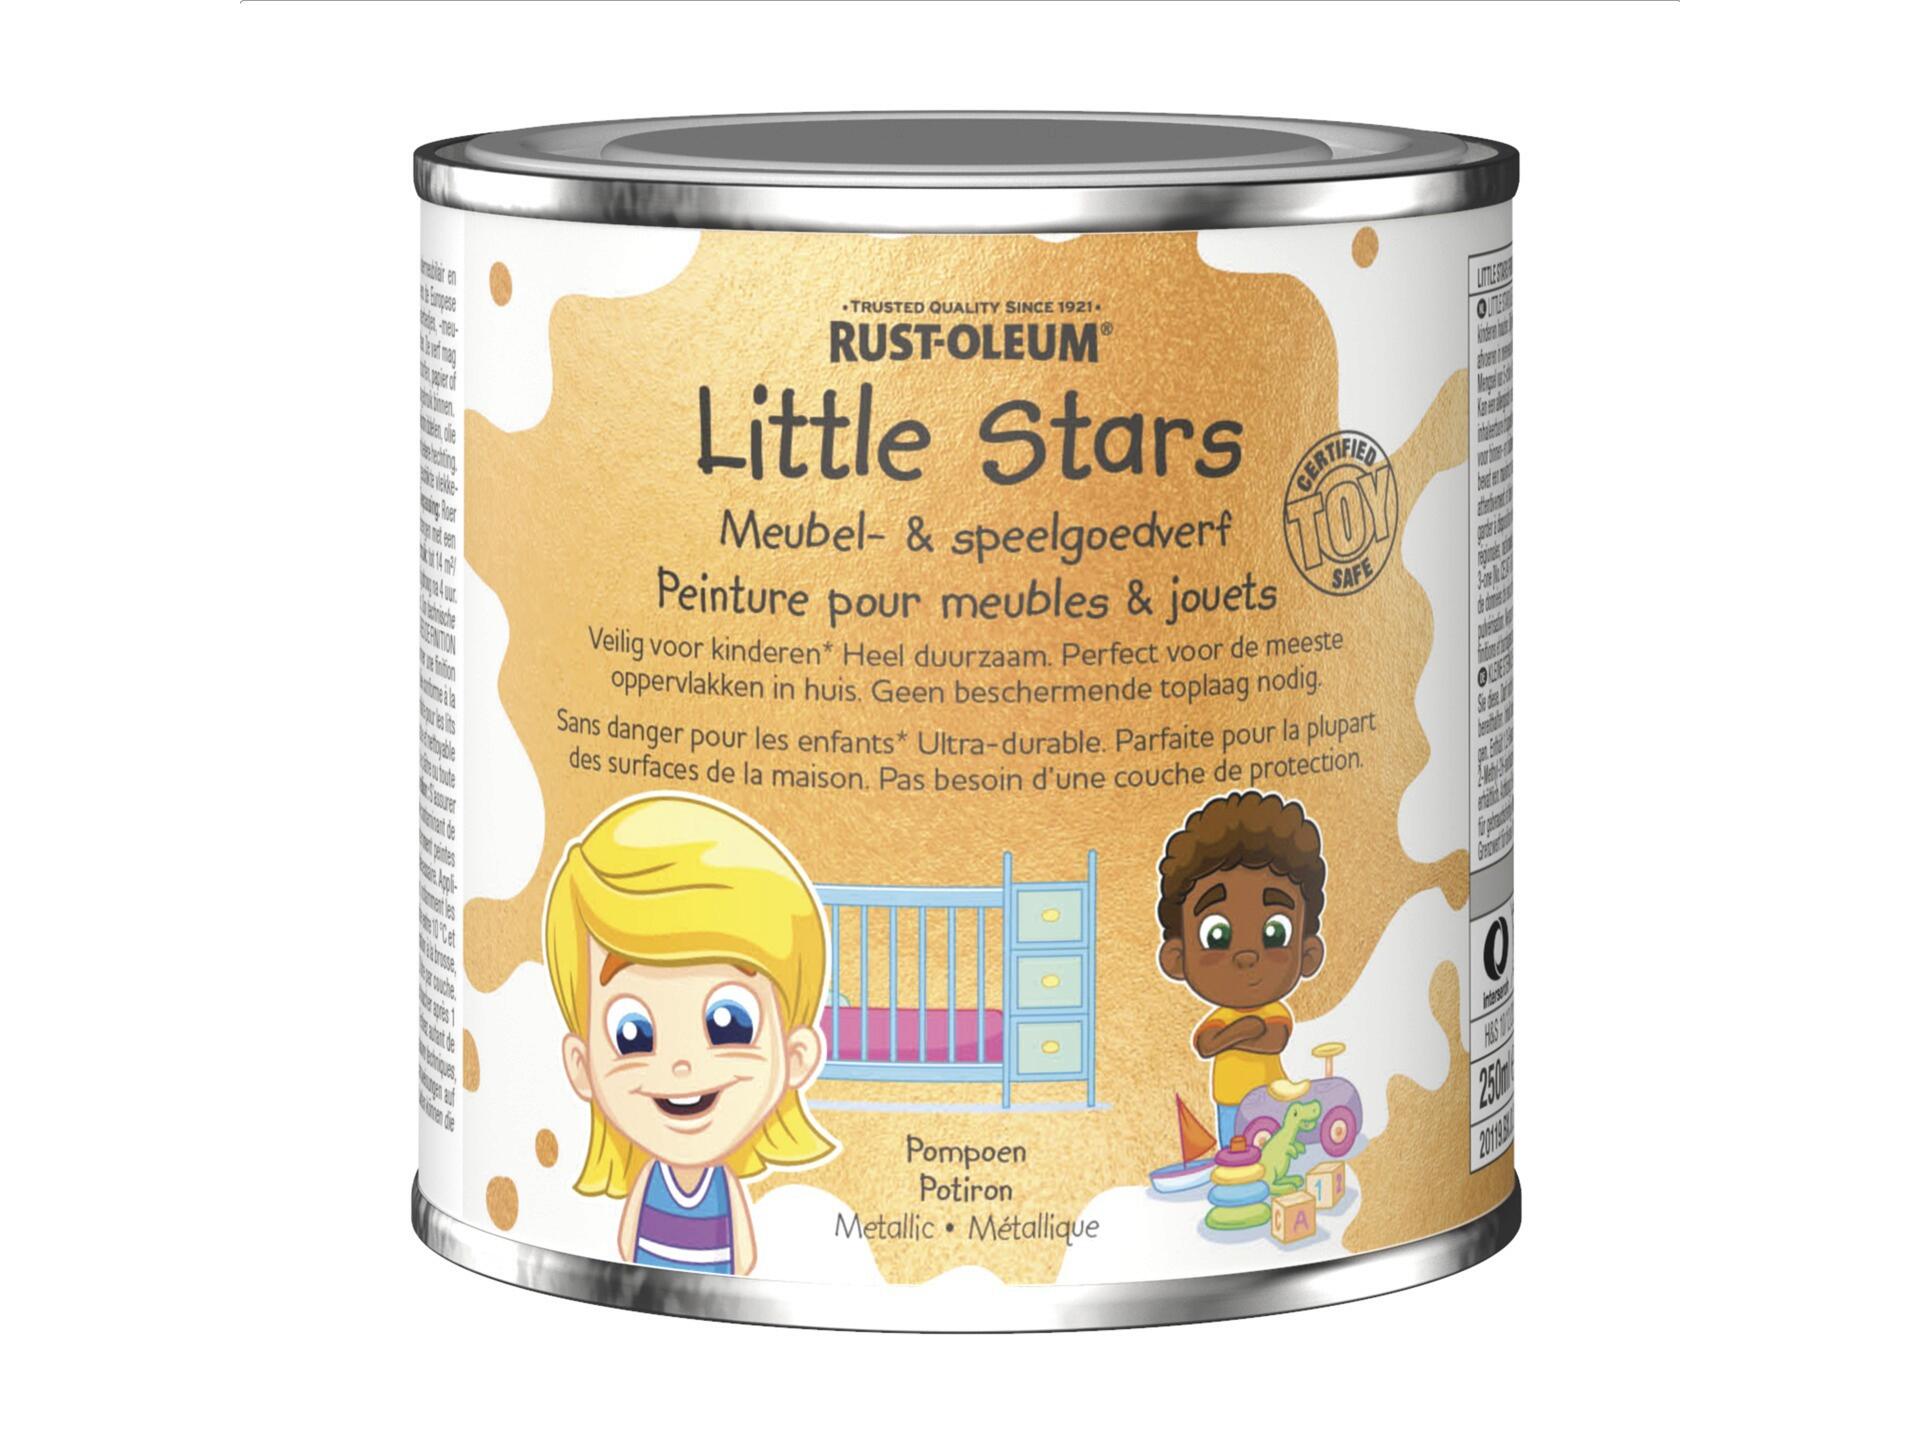 Rust-oleum Little Stars peinture pour meubles et jouets 250ml potiron